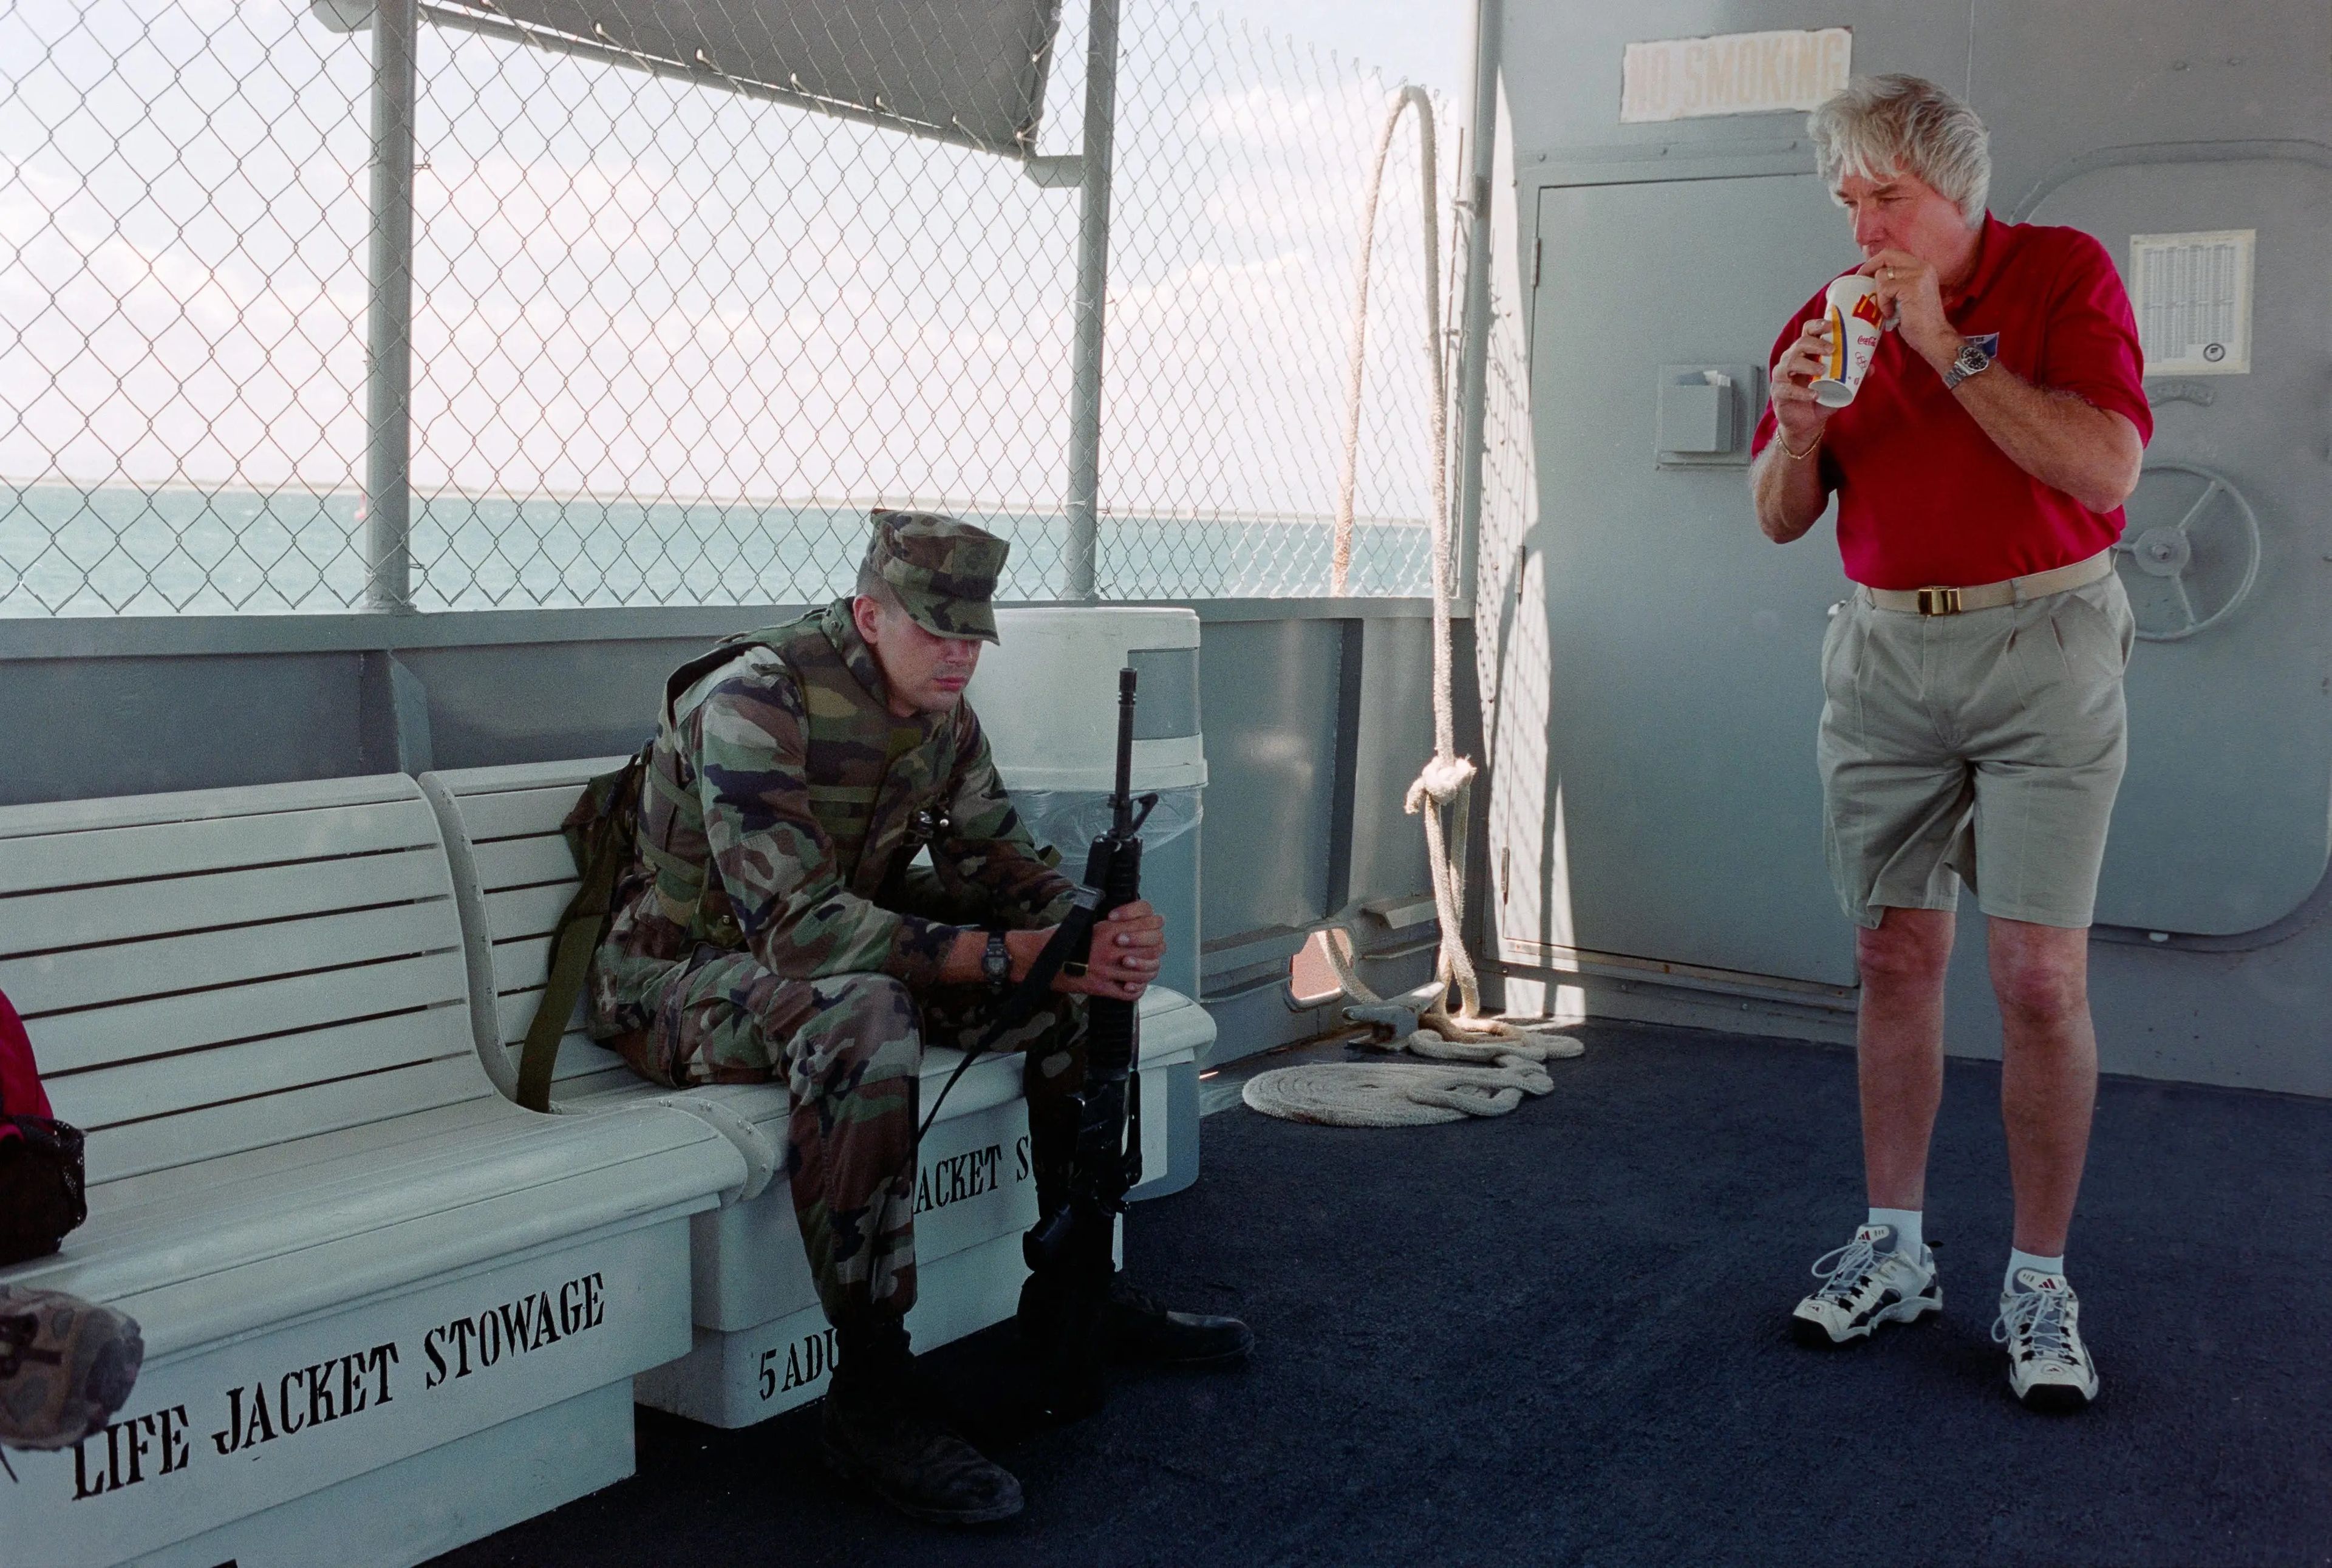 Un soldado de la guarnición de la Joint Task Force 160 vigilando a los prisioneros acompañado de un trabajador civil. Esta imagen fue tomada a bordo del transbordador que conecta los lados este y oeste de la base militar estadounidense.